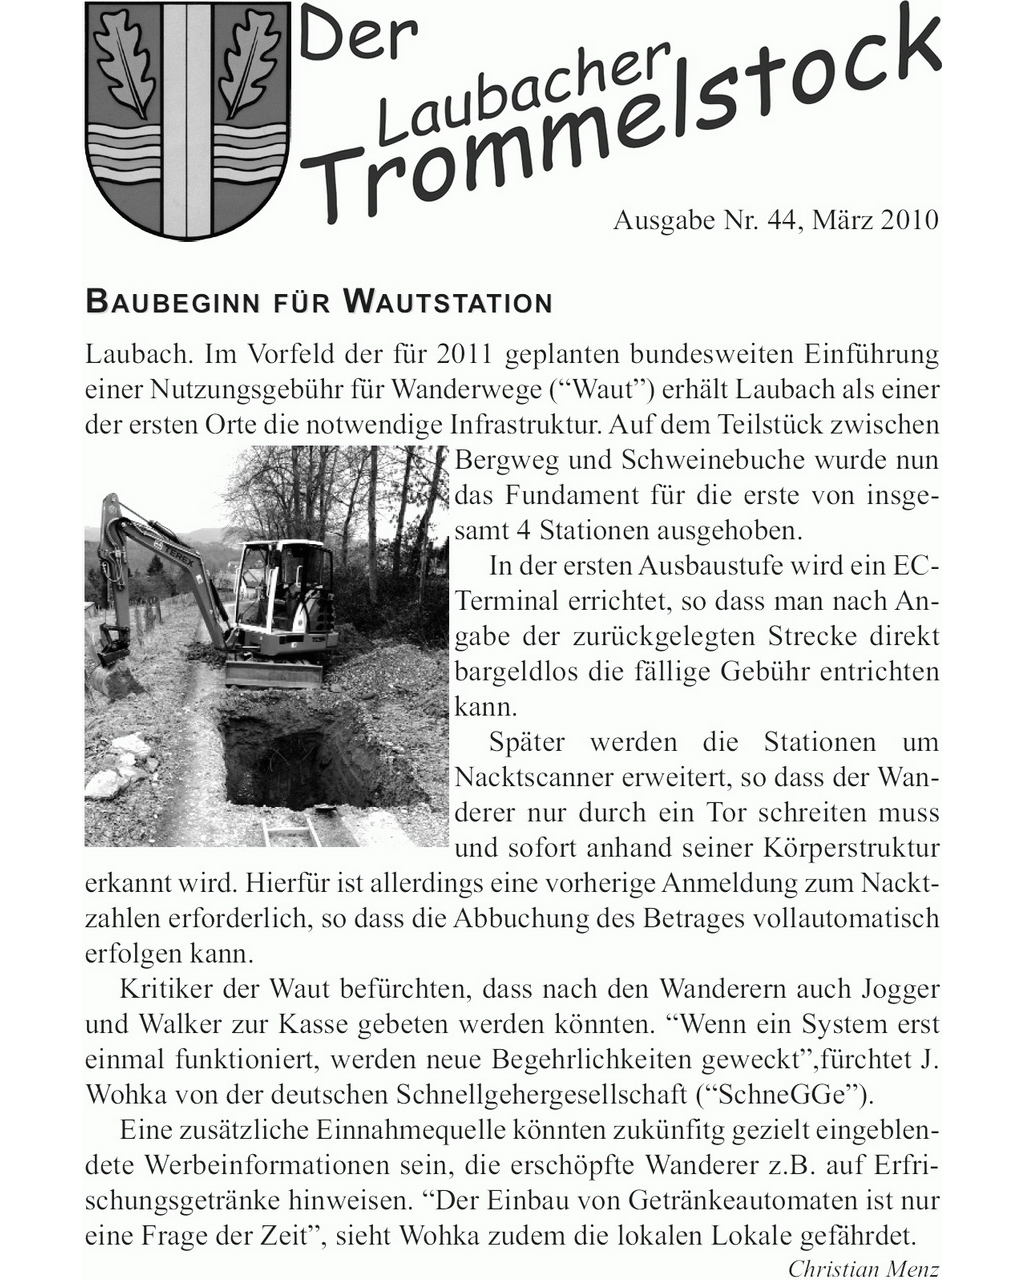 Laubacher-Trommelstock-Titelseite-044